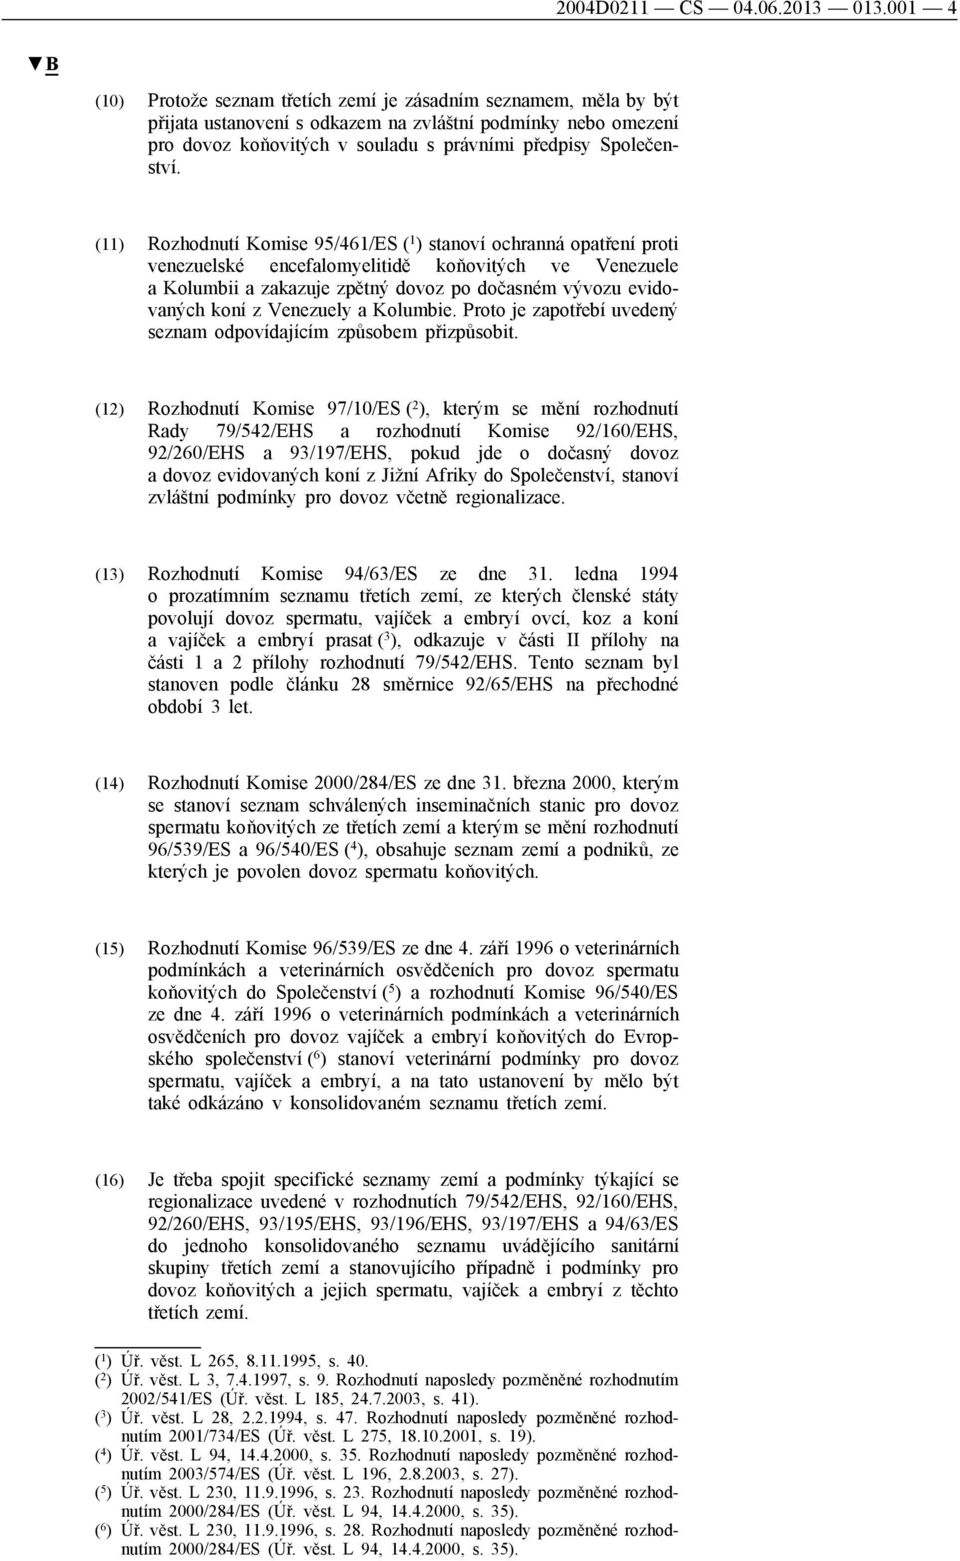 (11) Rozhodnutí Komise 95/461/ES ( 1 ) stanoví ochranná opatření proti venezuelské encefalomyelitidě koňovitých ve Venezuele a Kolumbii a zakazuje zpětný dovoz po dočasném vývozu evidovaných koní z